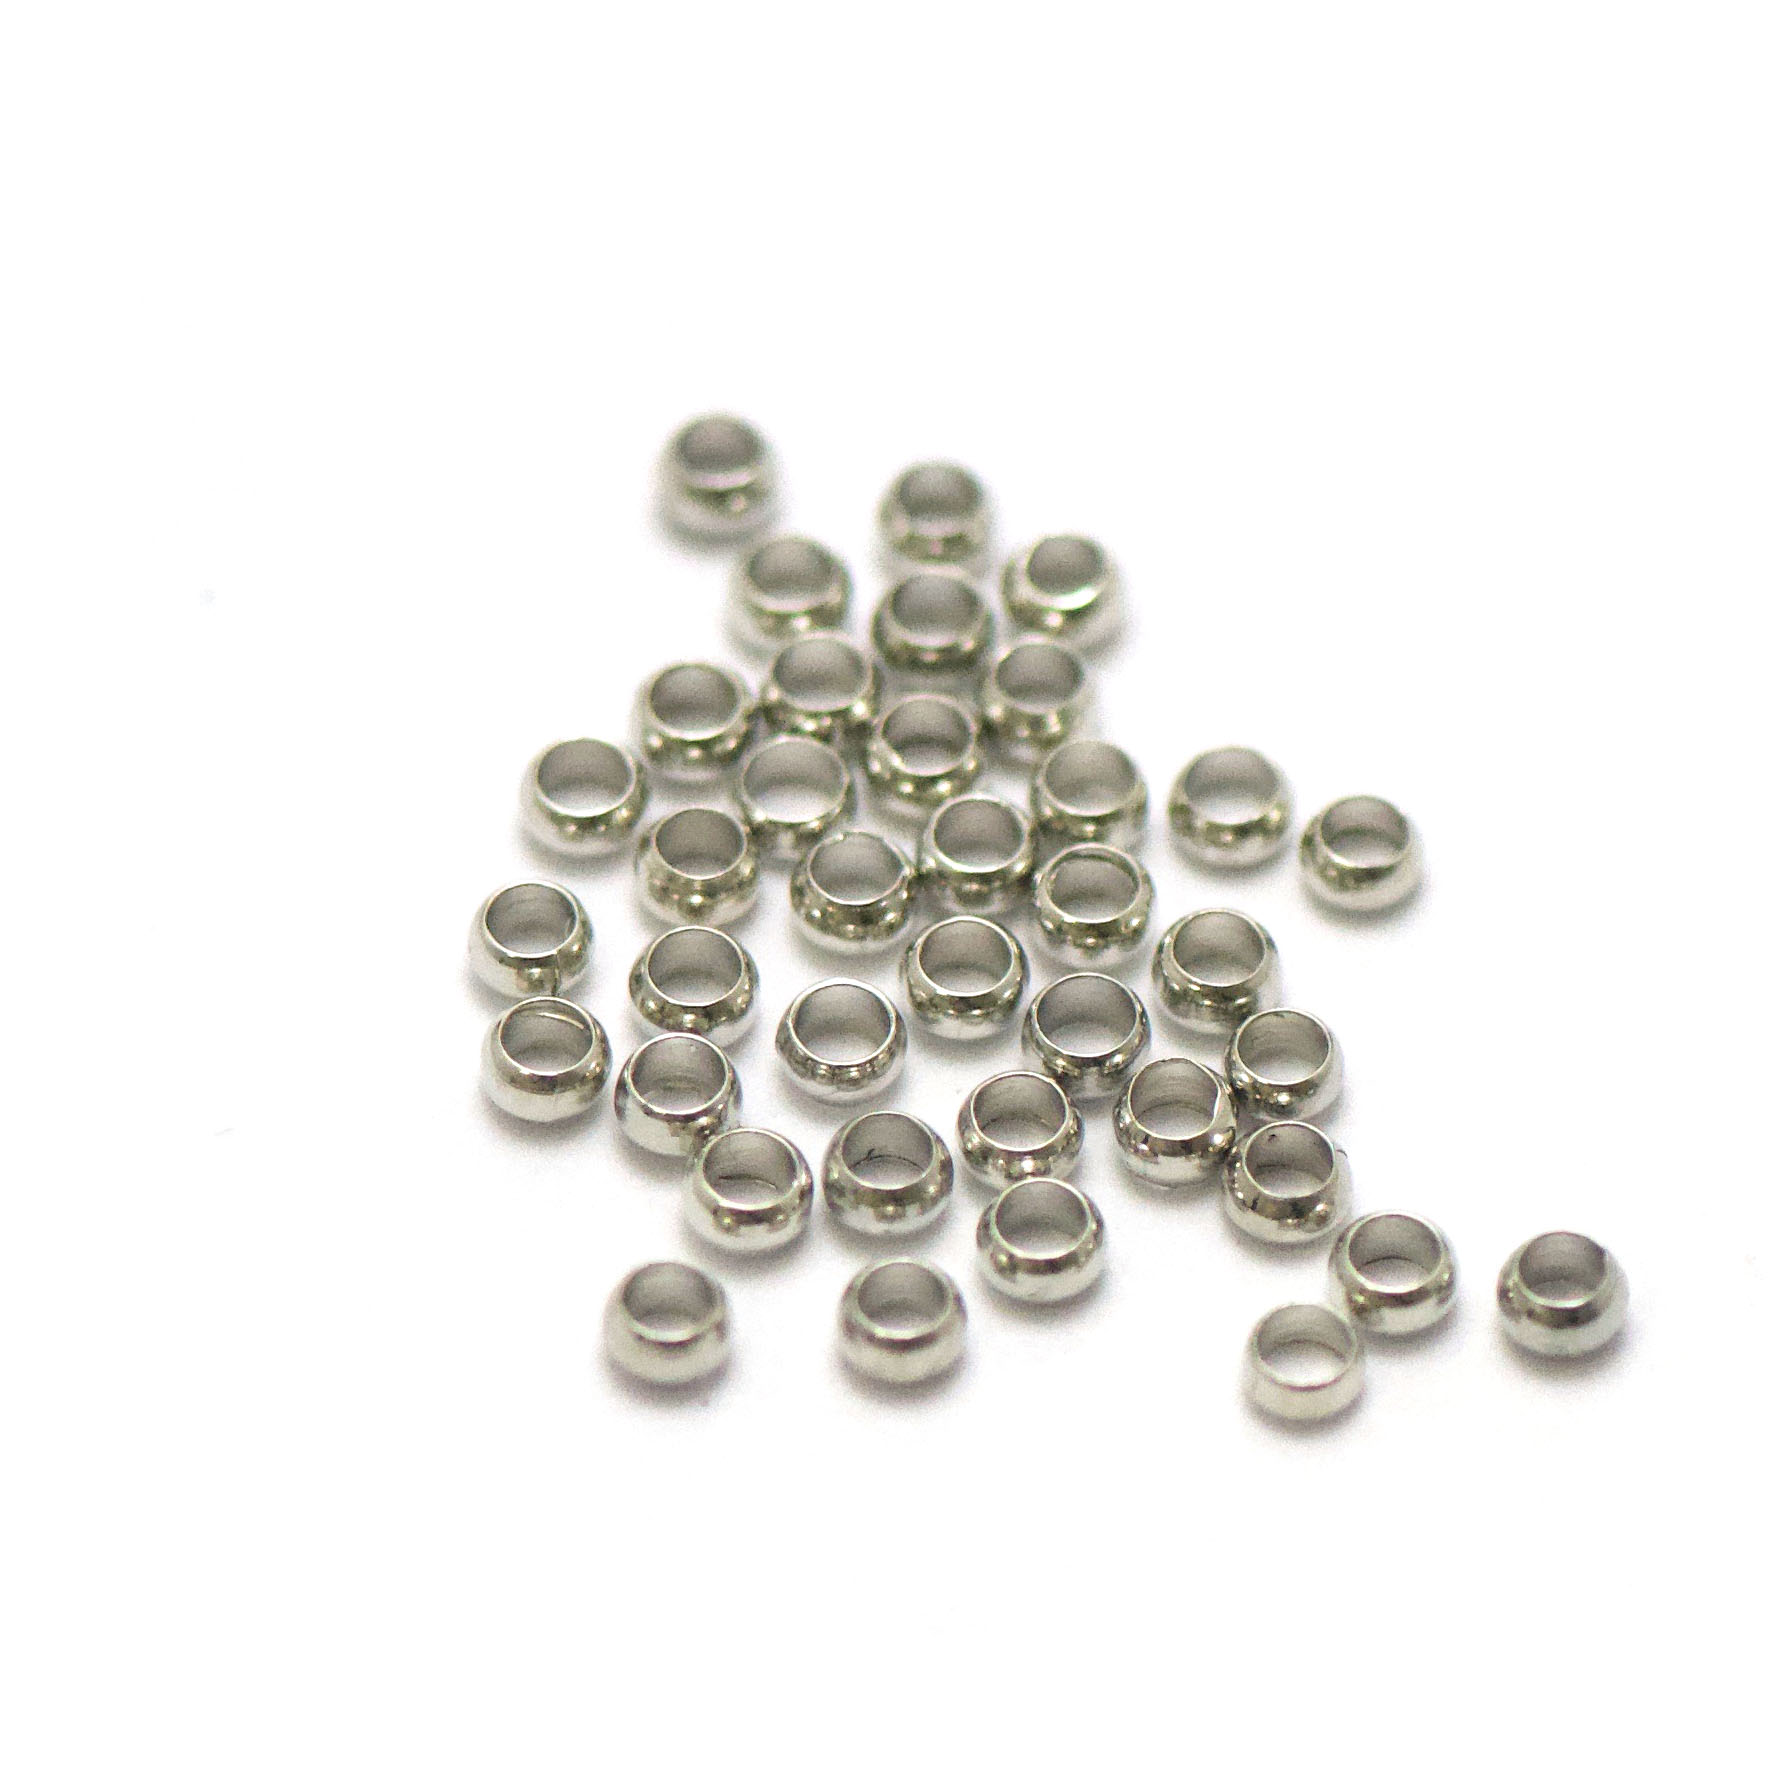 5g environ 146 perles à écraser 3 mm, argenté